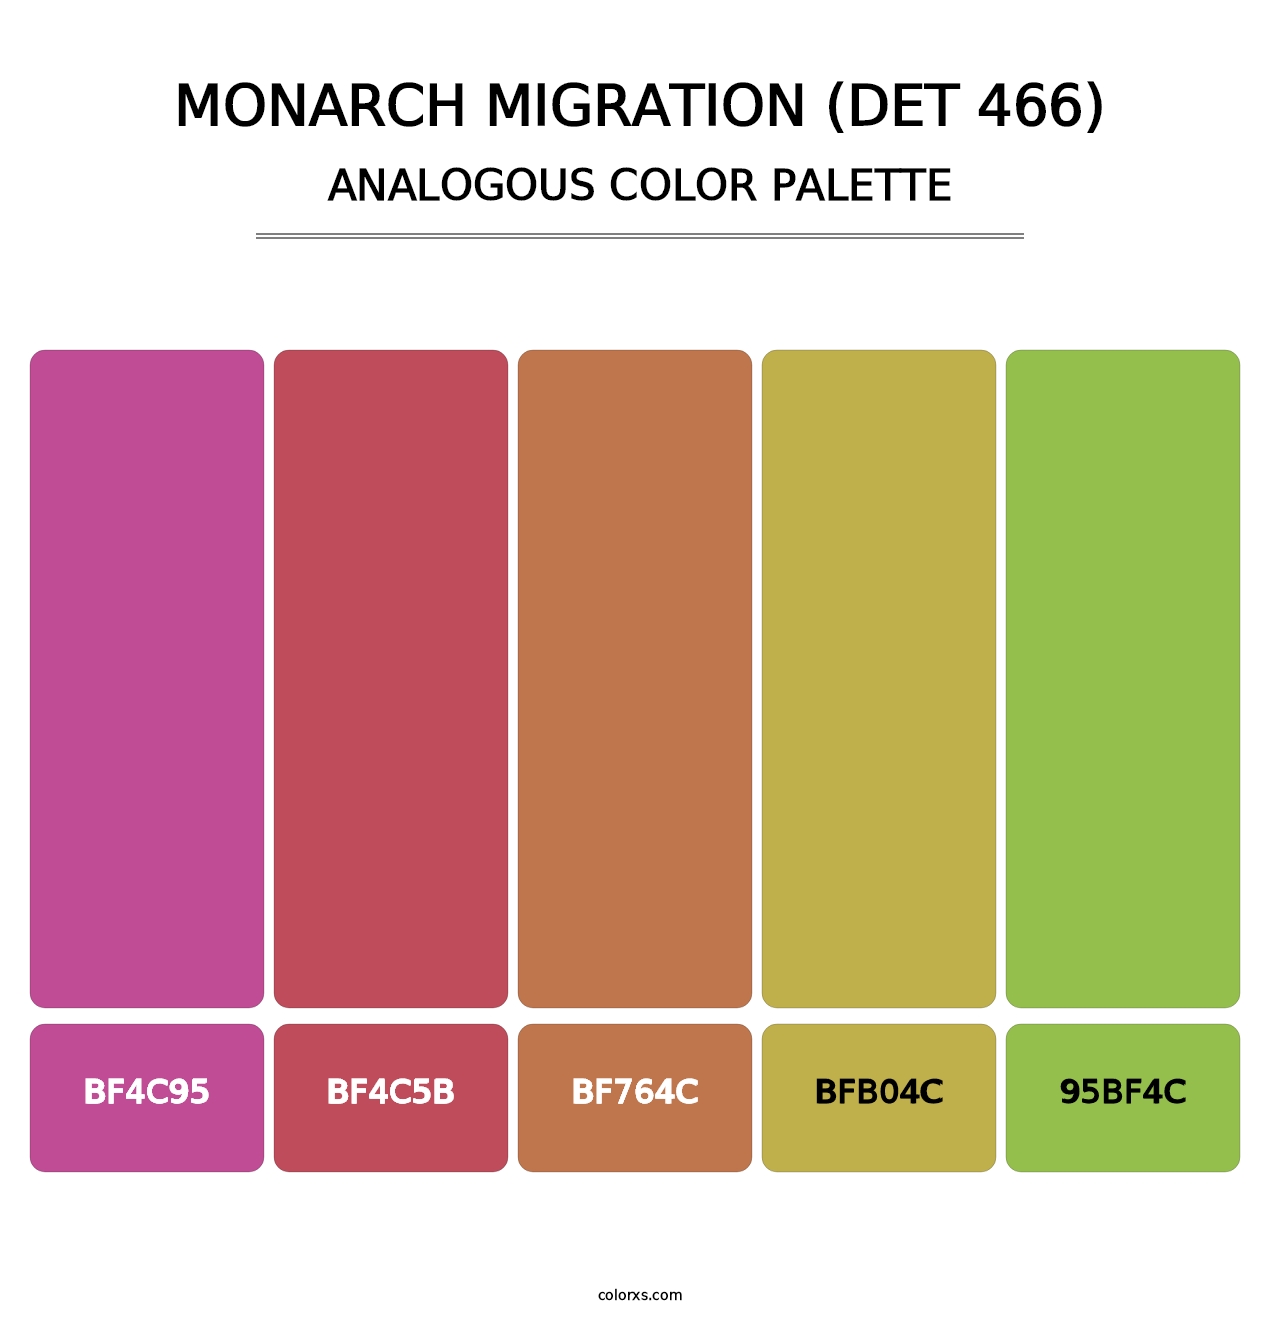 Monarch Migration (DET 466) - Analogous Color Palette